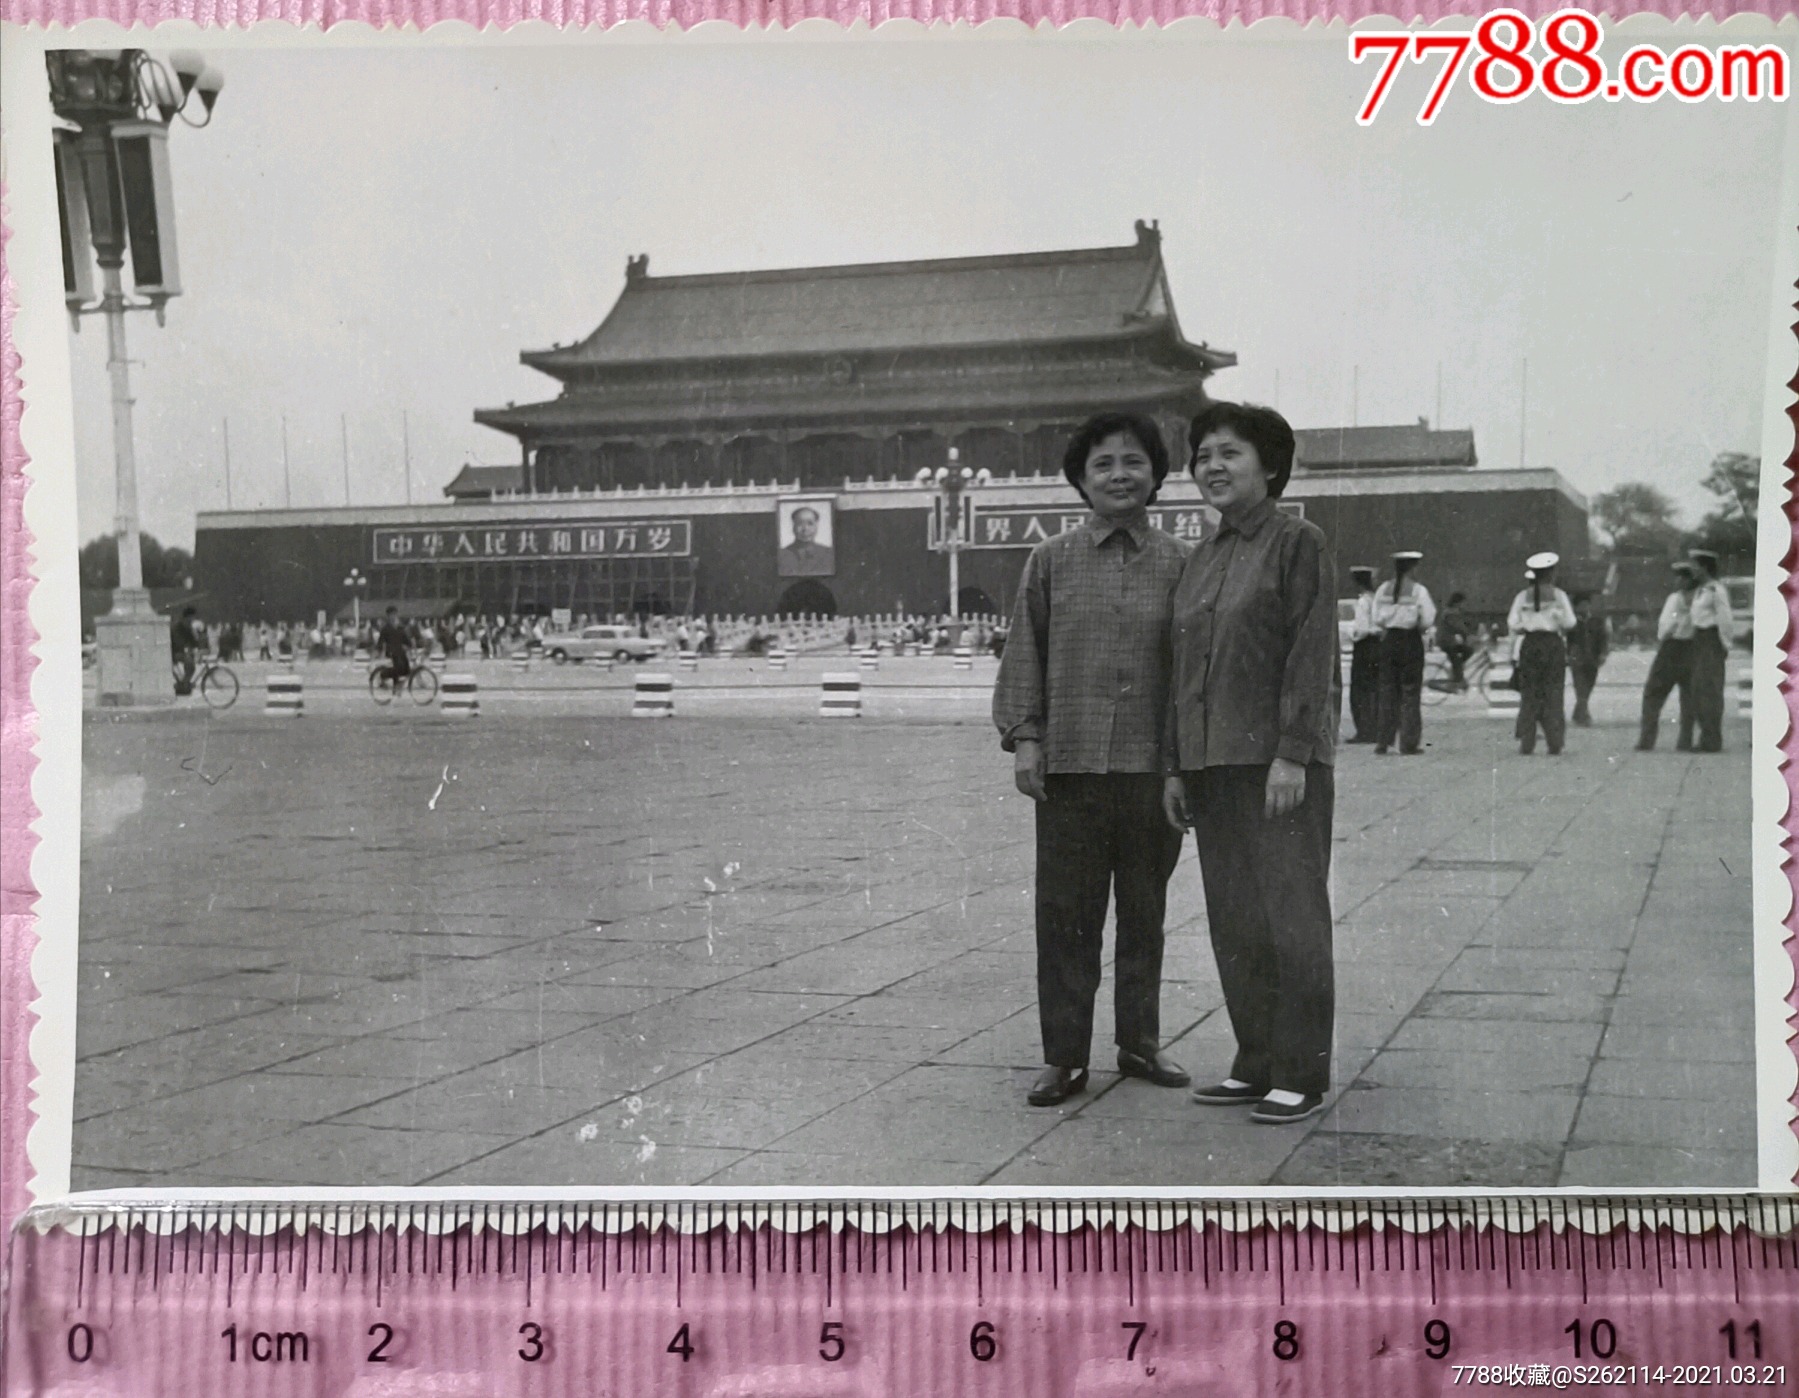 大约六七十年代的北京天安门老照片,几位海军和当时的服饰,骑自行车的